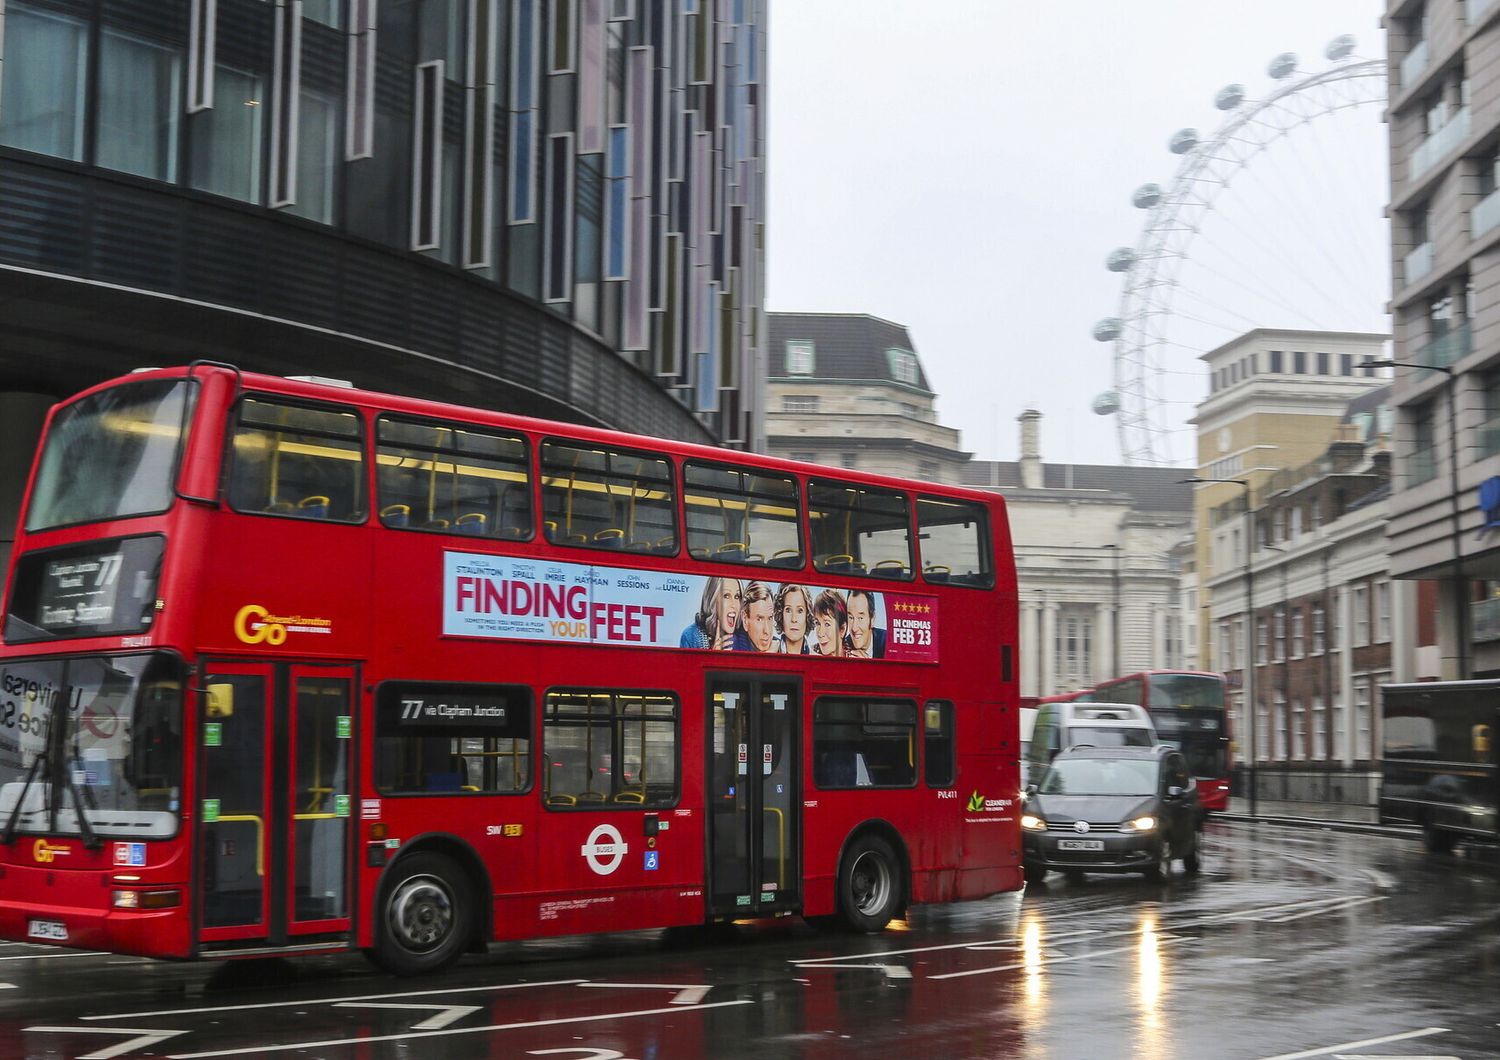 &nbsp;Un double-decker, bus a due piani, per le strade di Londra